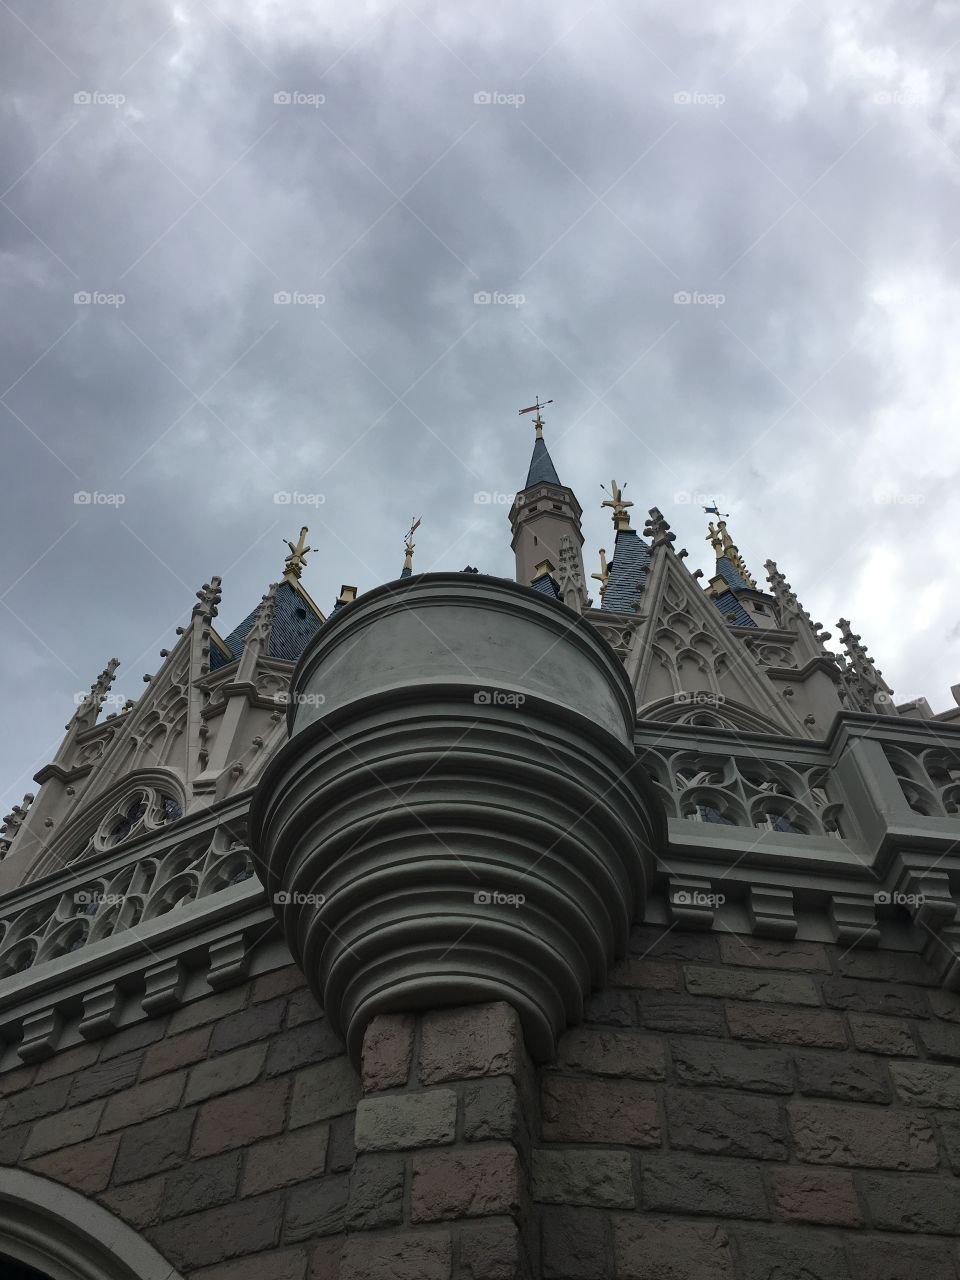 Cinderella castle. 